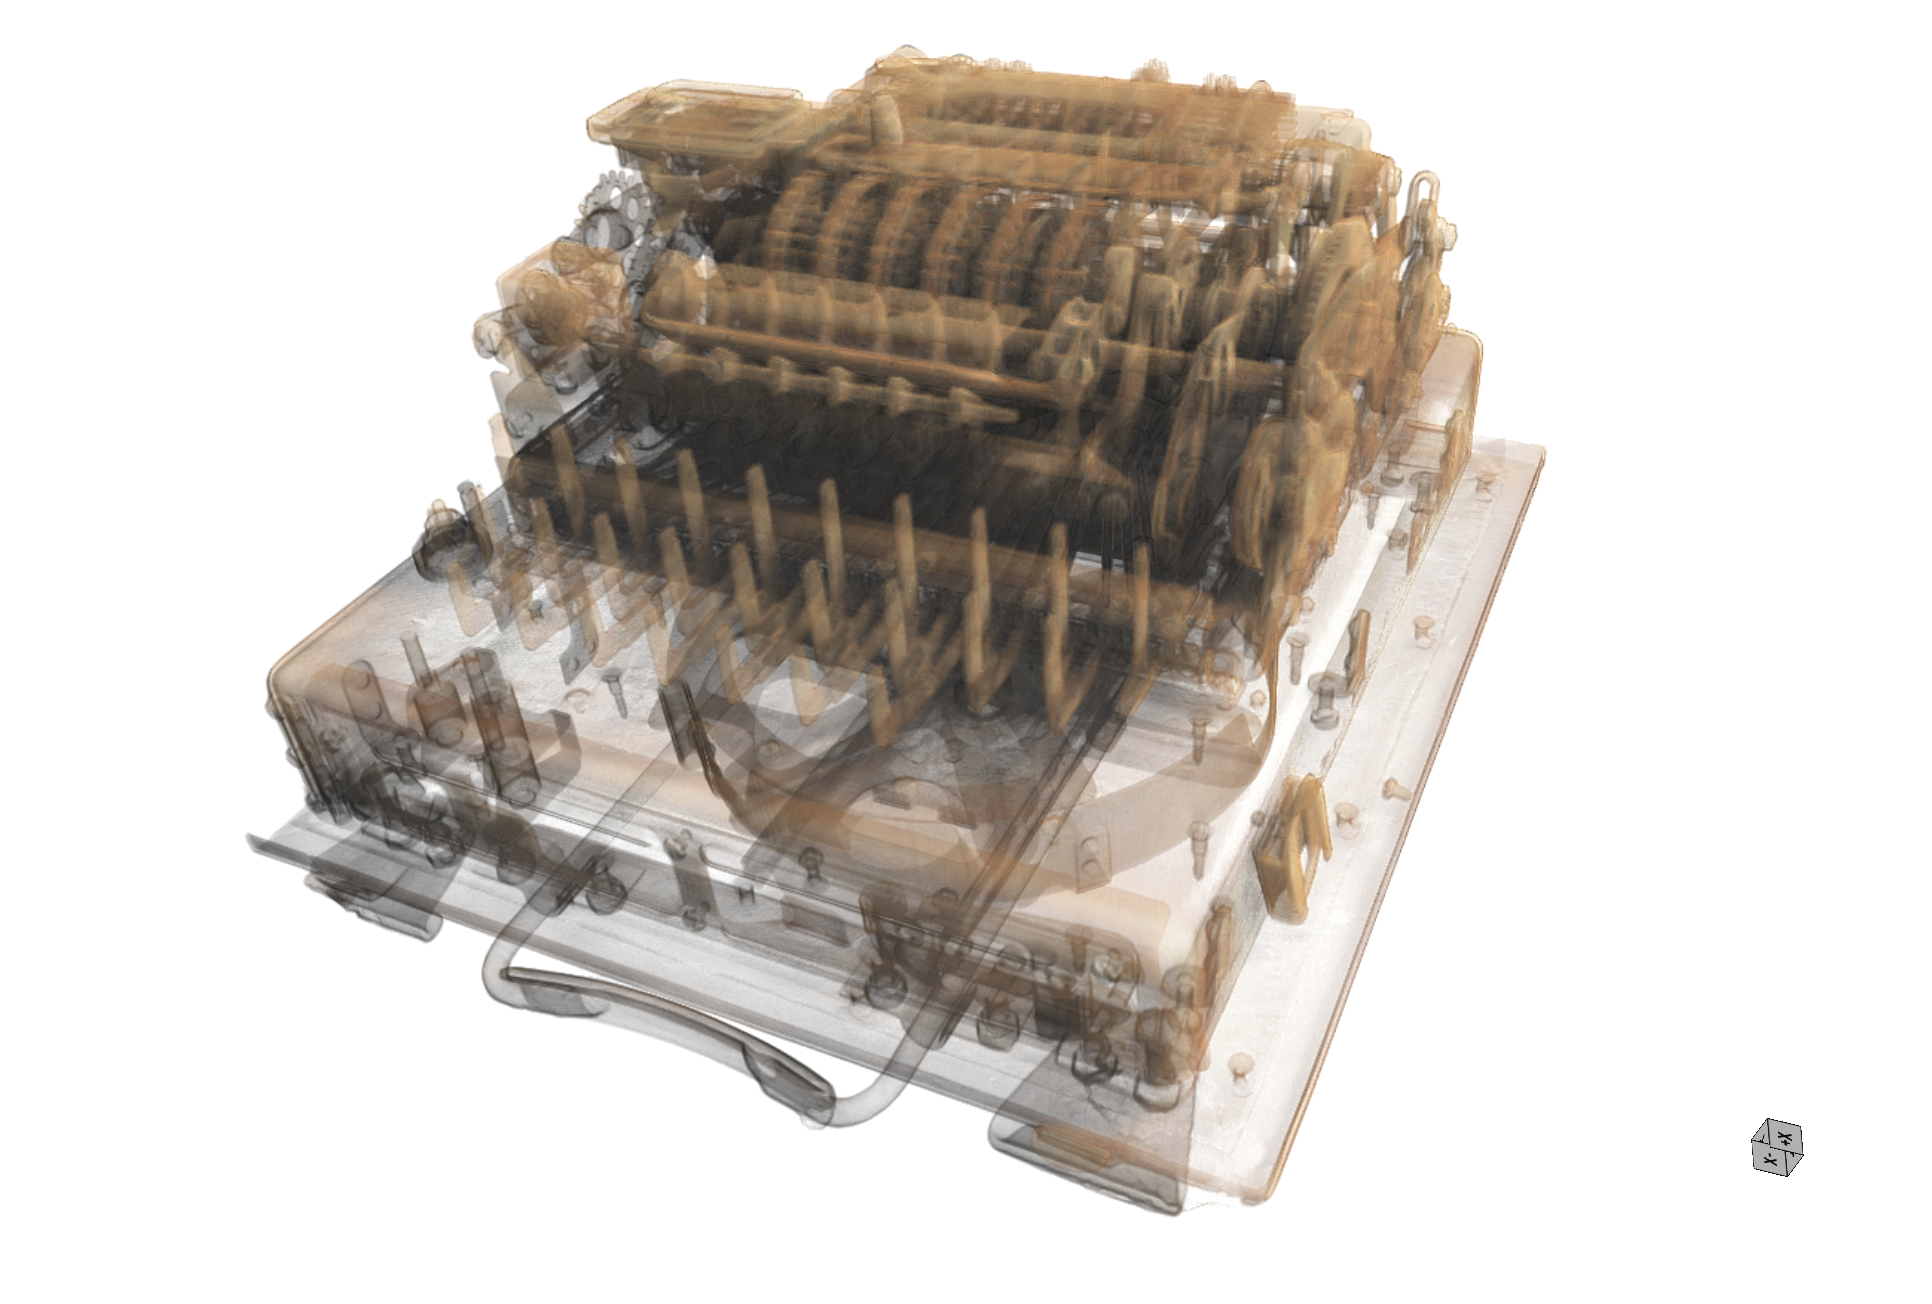 Röntgenbild einer Chiffriermaschine SG-41, die als Nachfolger der Heeres-Enigma-Dechiffriergeräte gilt. 